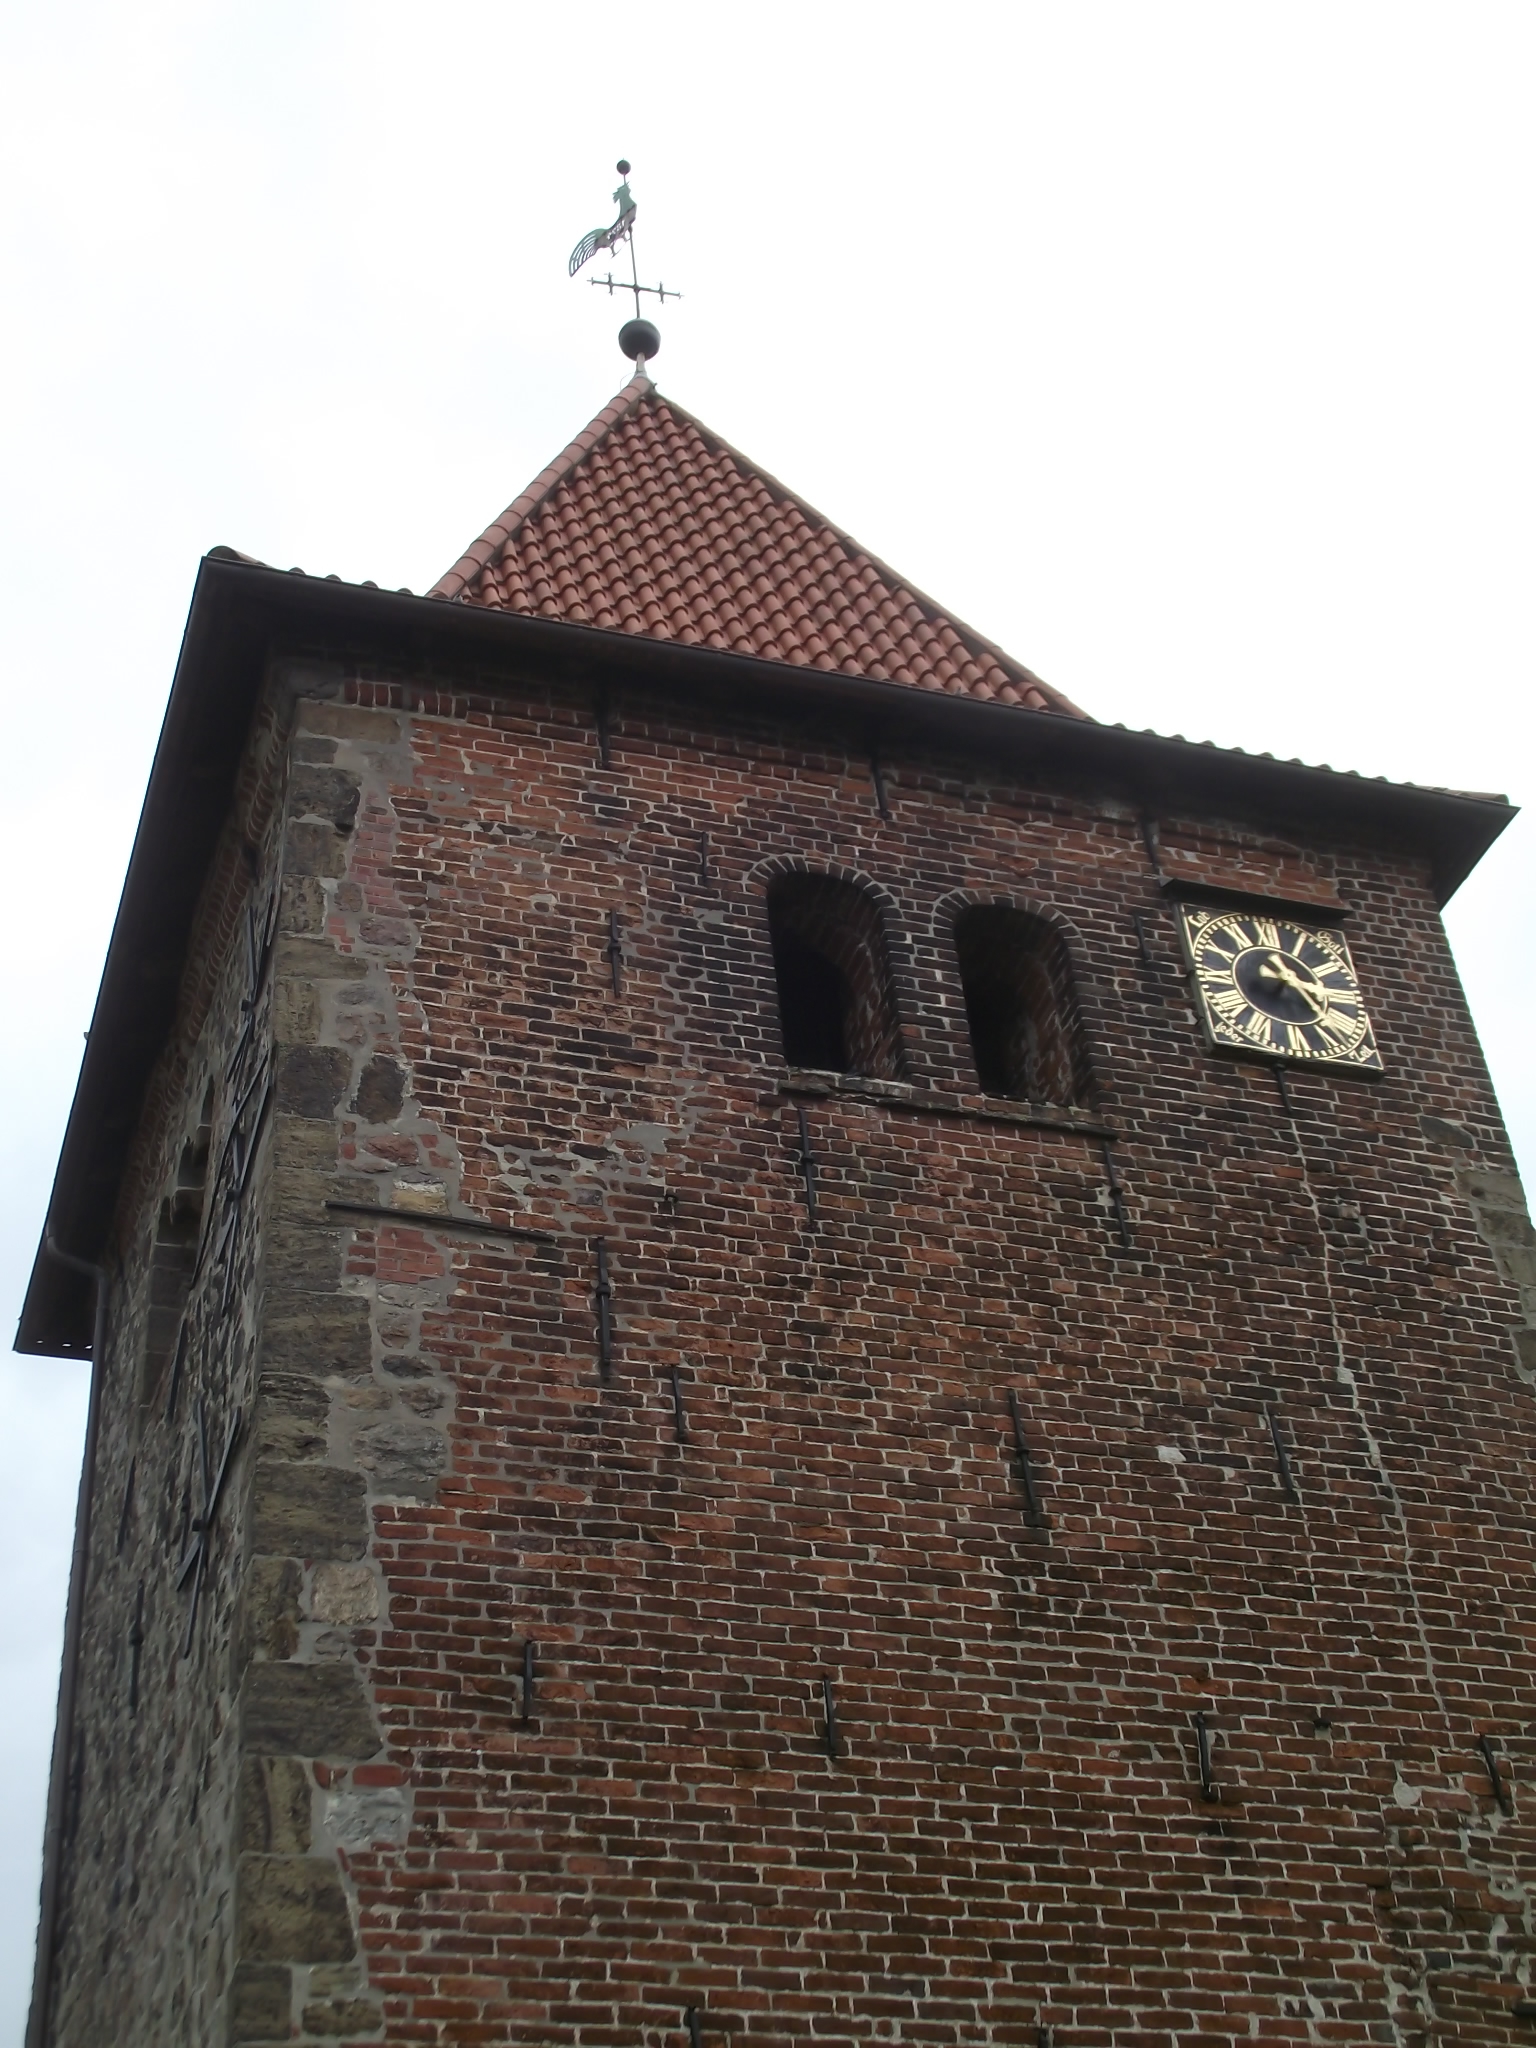 Evangelische St. Laurentius Kirche in Hasbergen - Wetterhahn und Kirchuhr